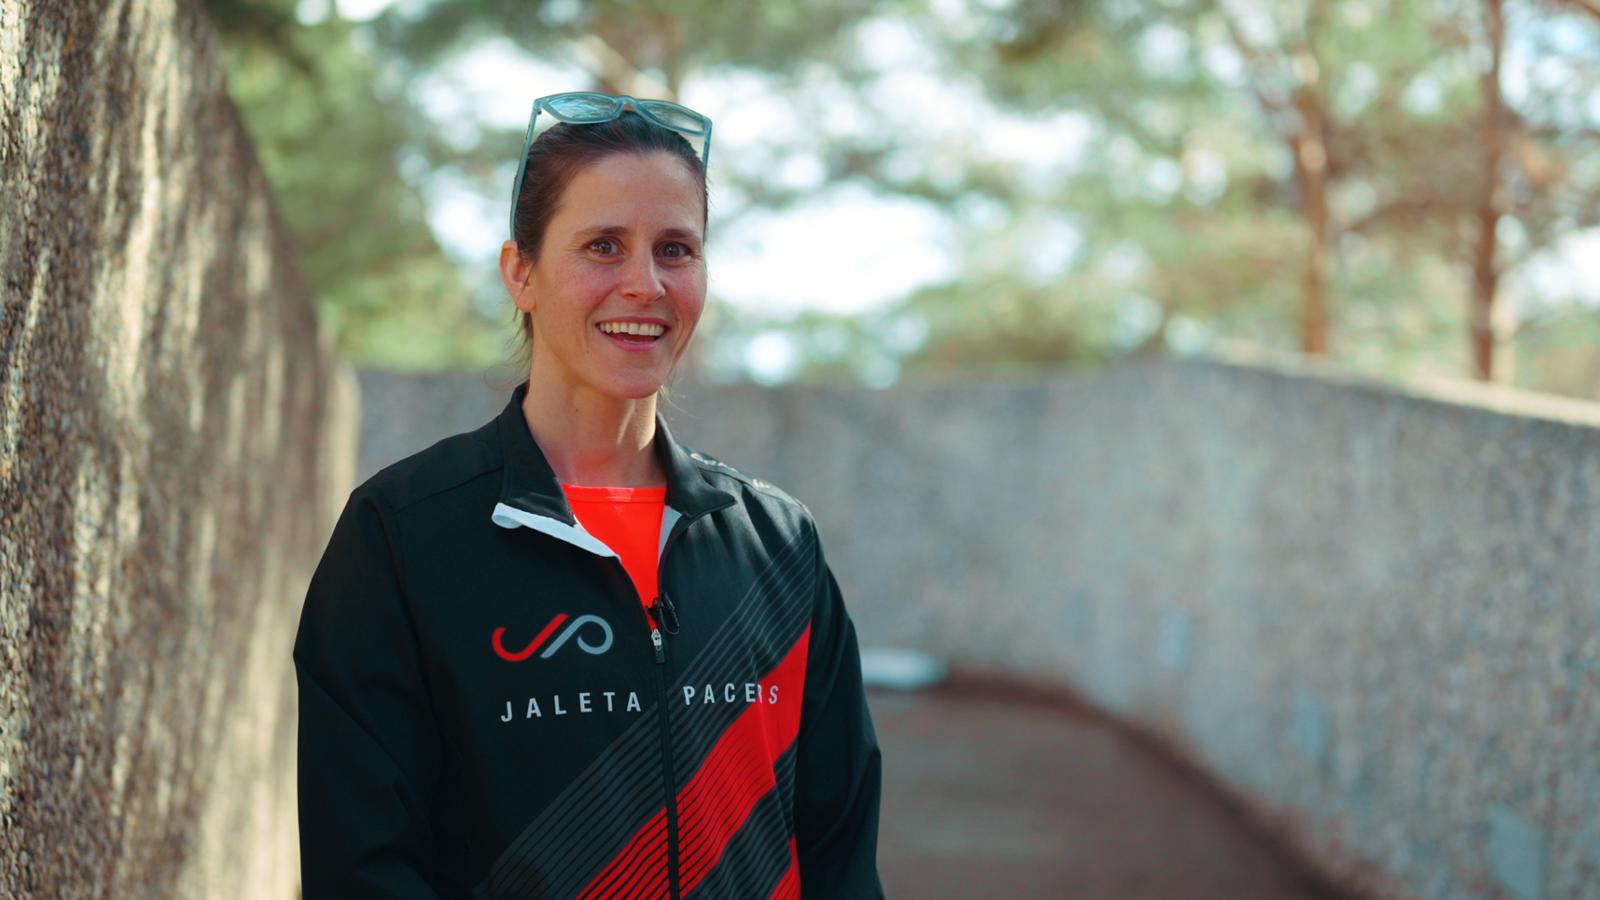 Dr. Julia Totosy de Zepetnek in her running team jacket.